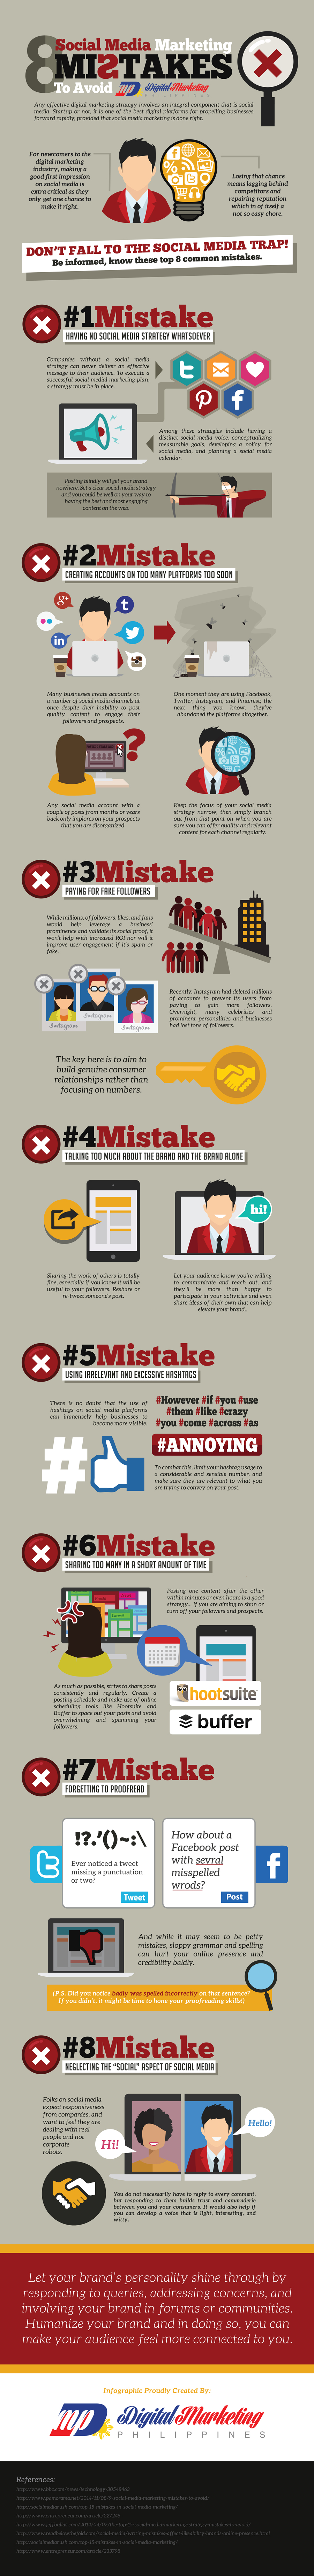 8 social media marketing mistakes to avoid